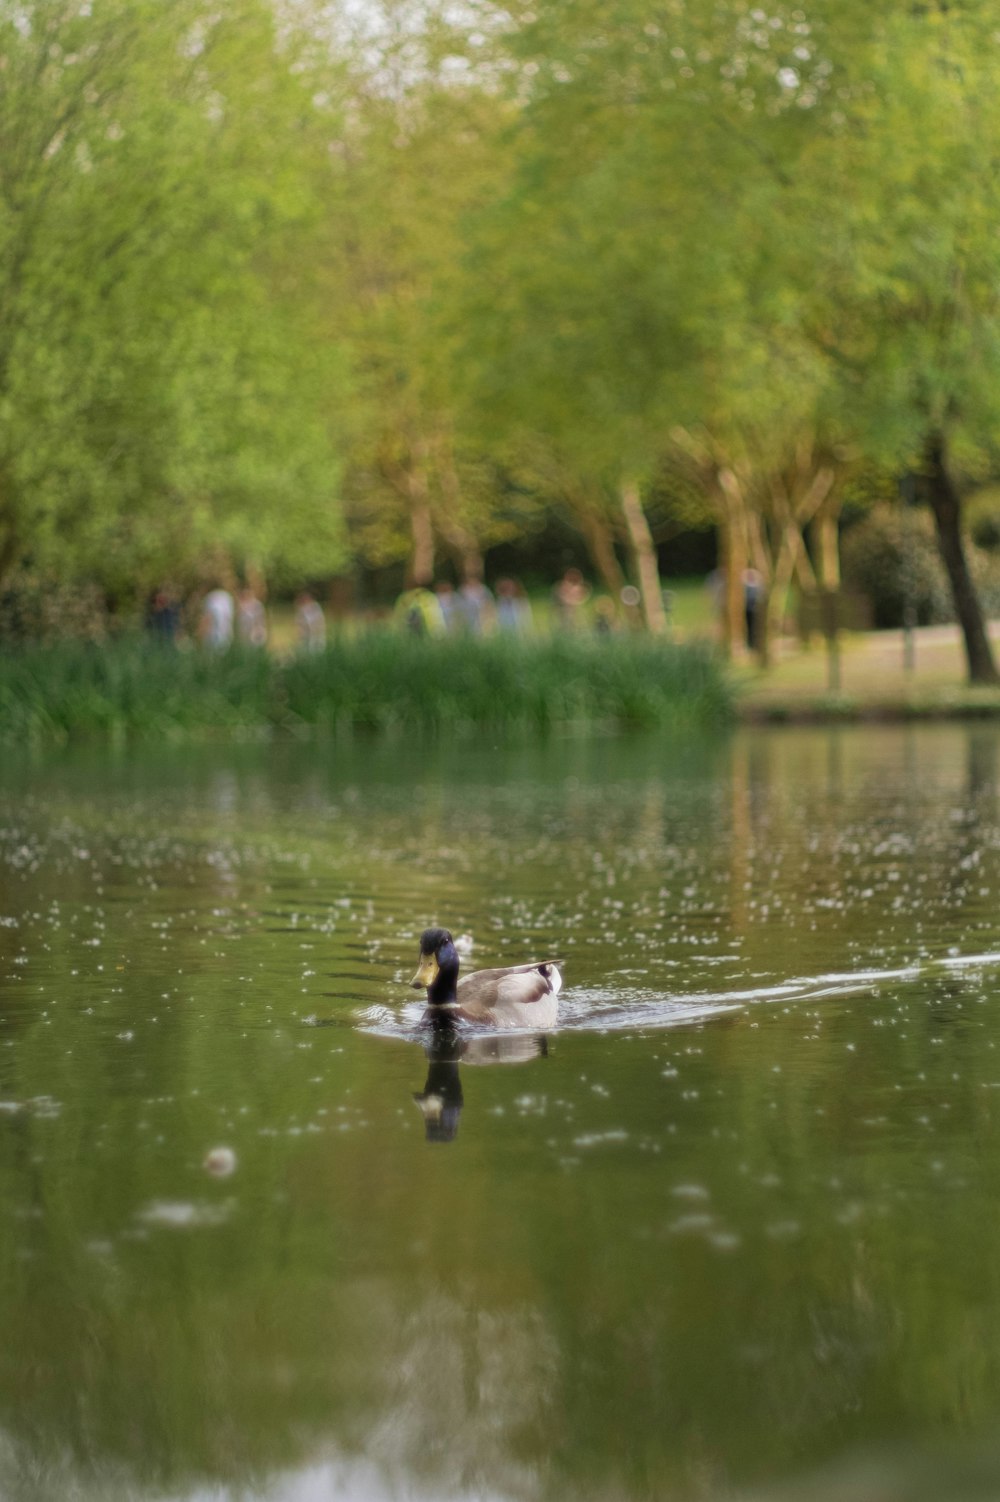 un couple de canards flottant au-dessus d’un lac